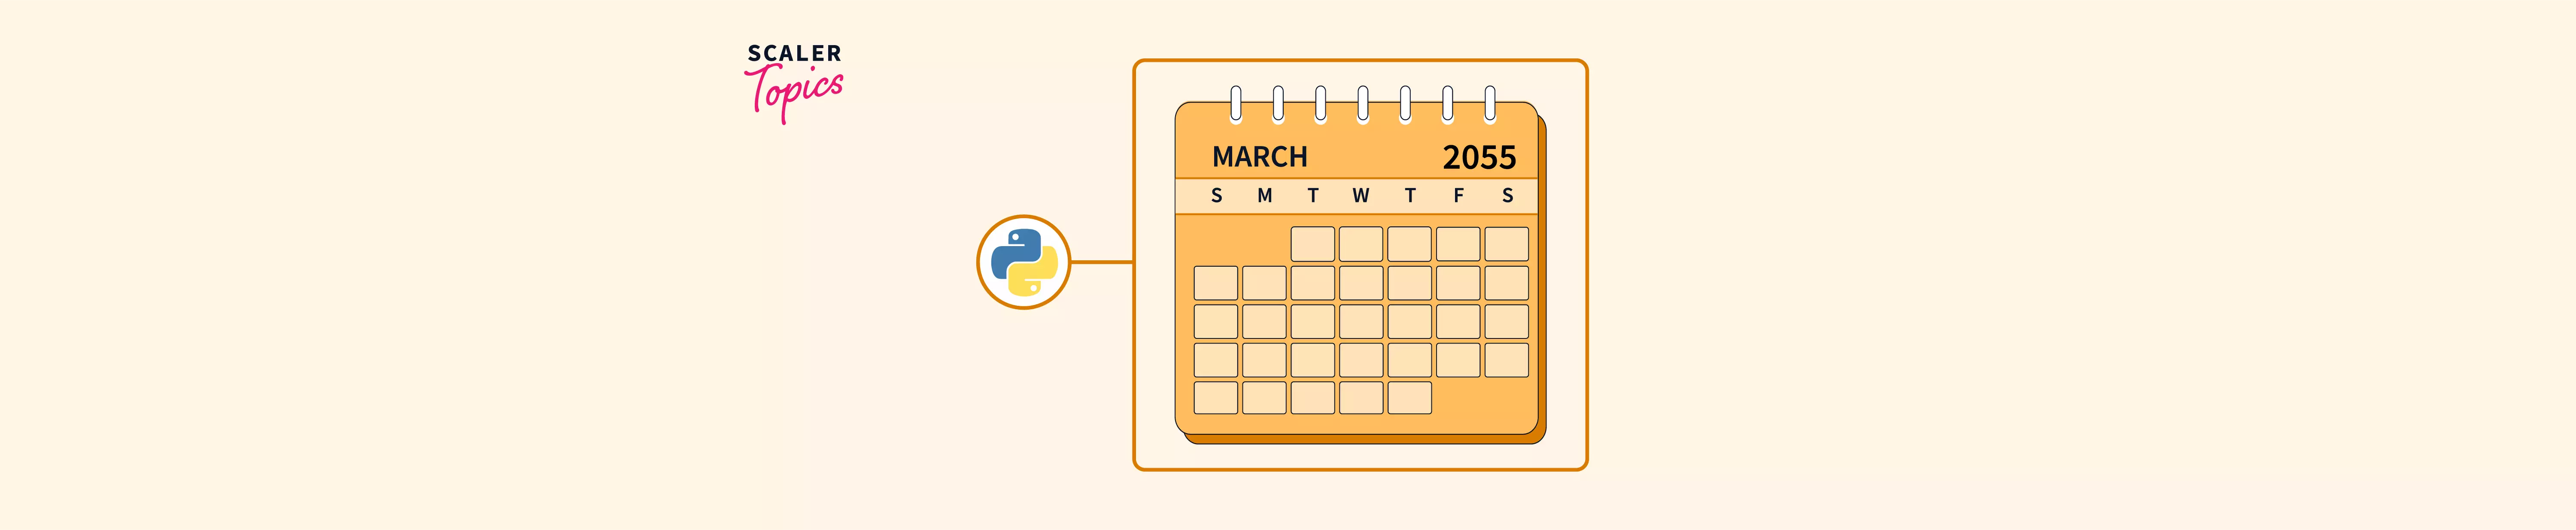 Calendar Module in Python Scaler Topics